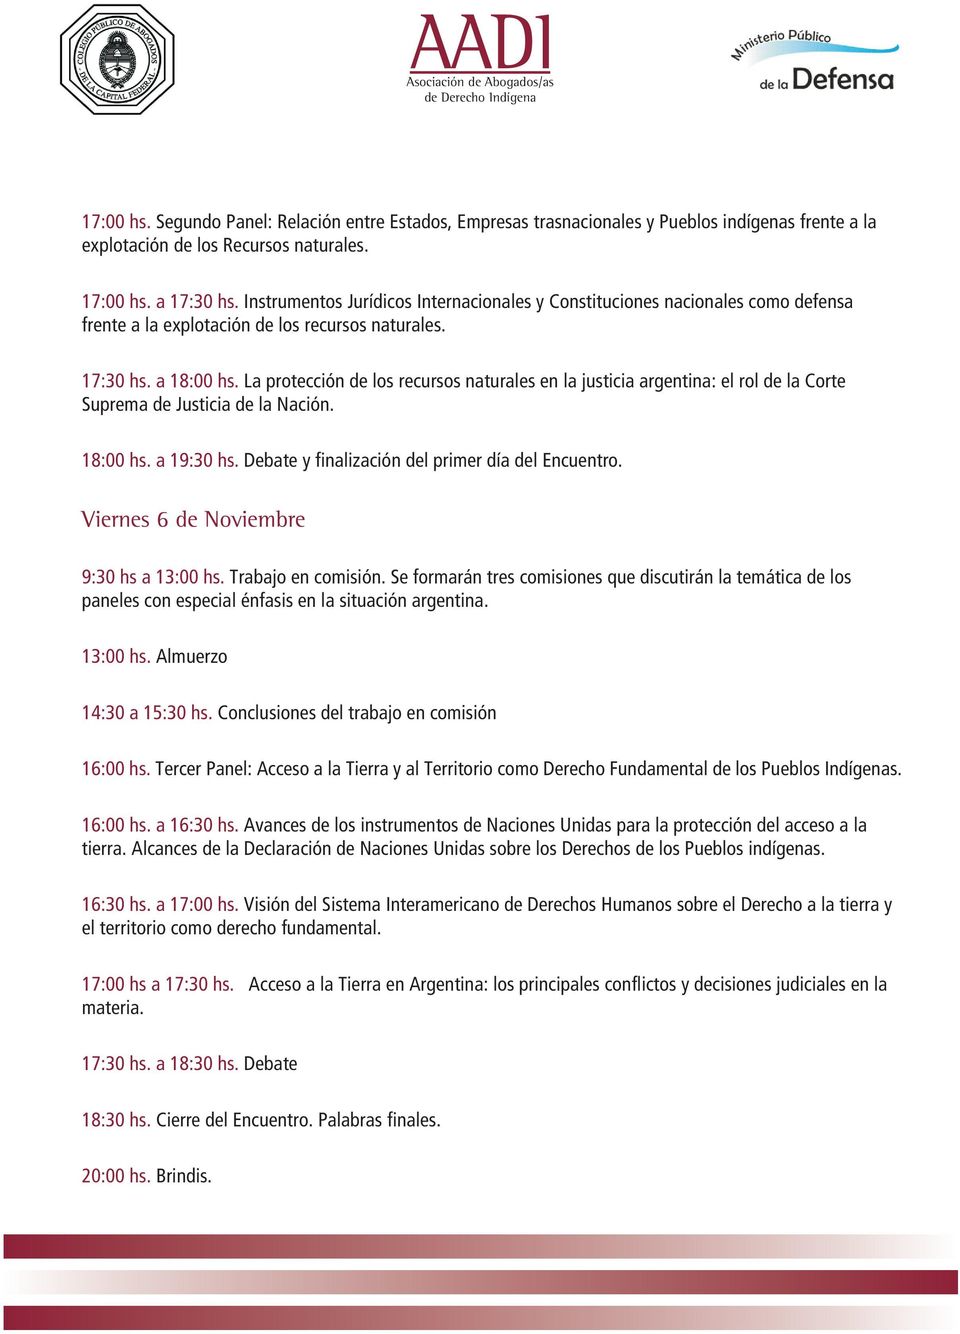 La protección de los recursos naturales en la justicia argentina: el rol de la Corte Suprema de Justicia de la Nación. 18:00 hs. a 19:30 hs. Debate y finalización del primer día del Encuentro.